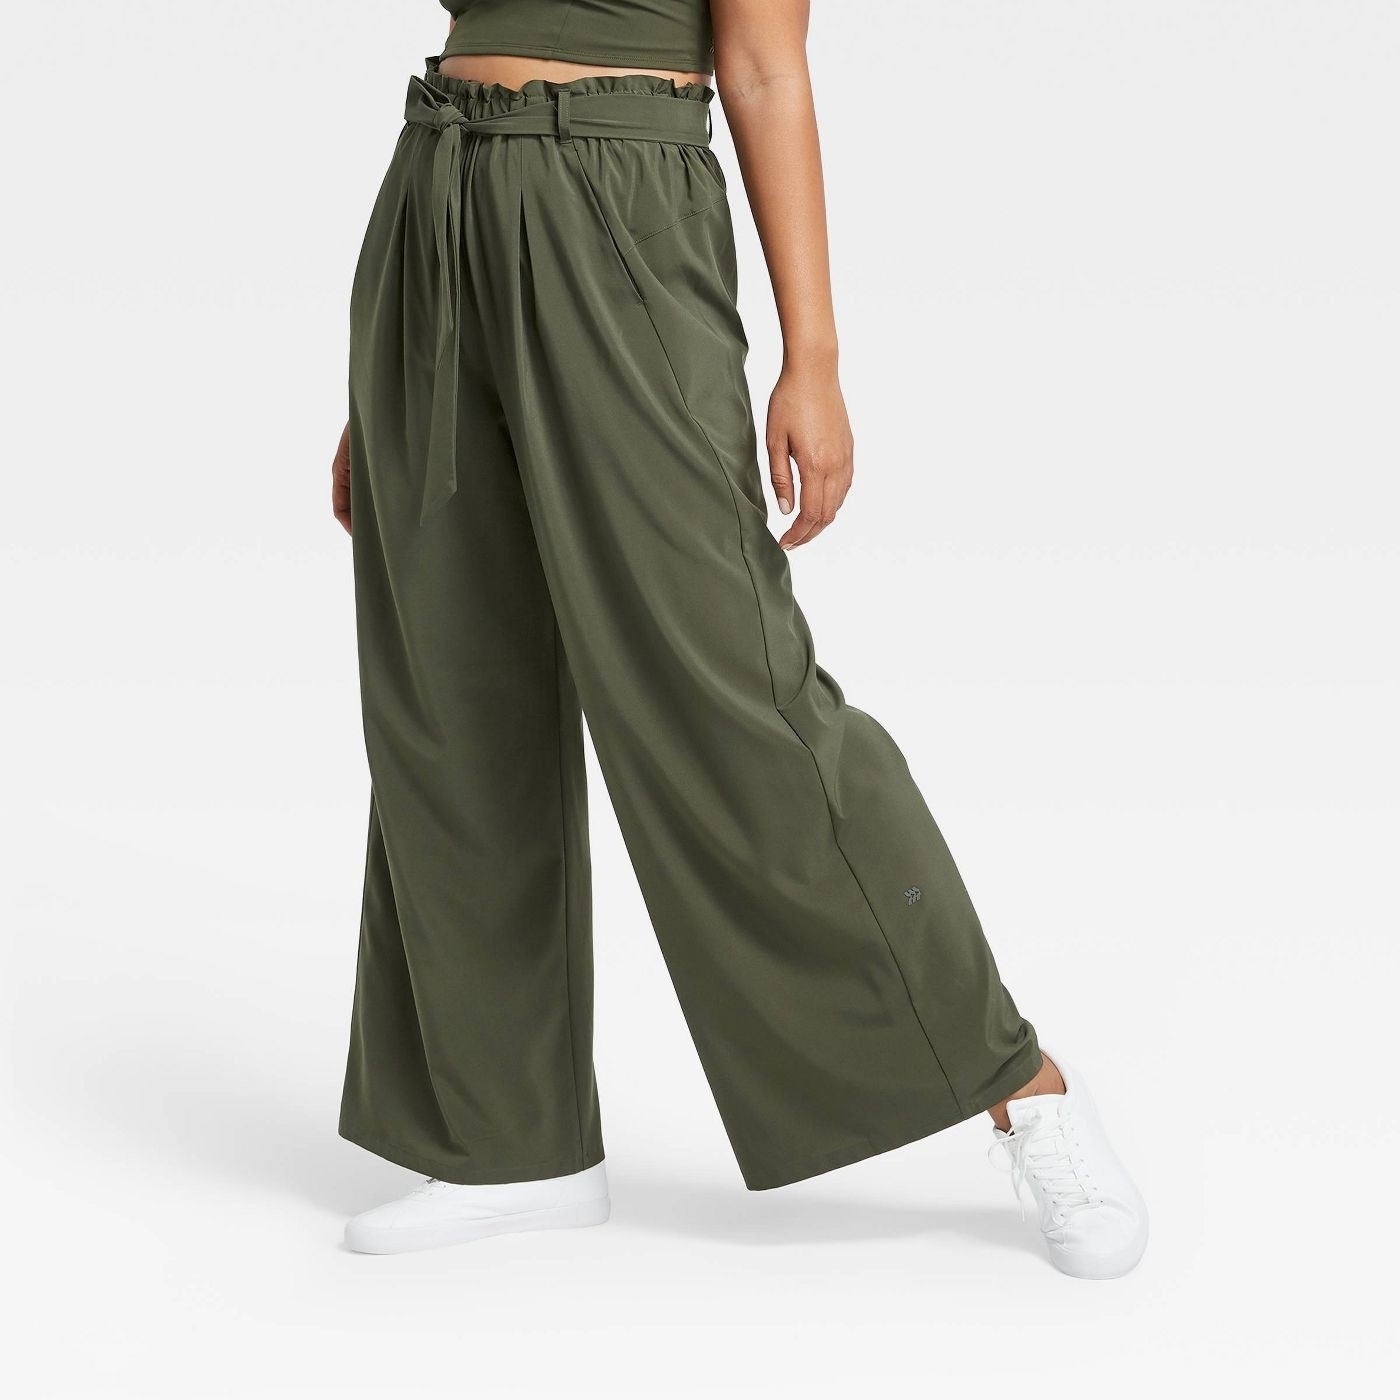 model wearing olive green wide leg pants